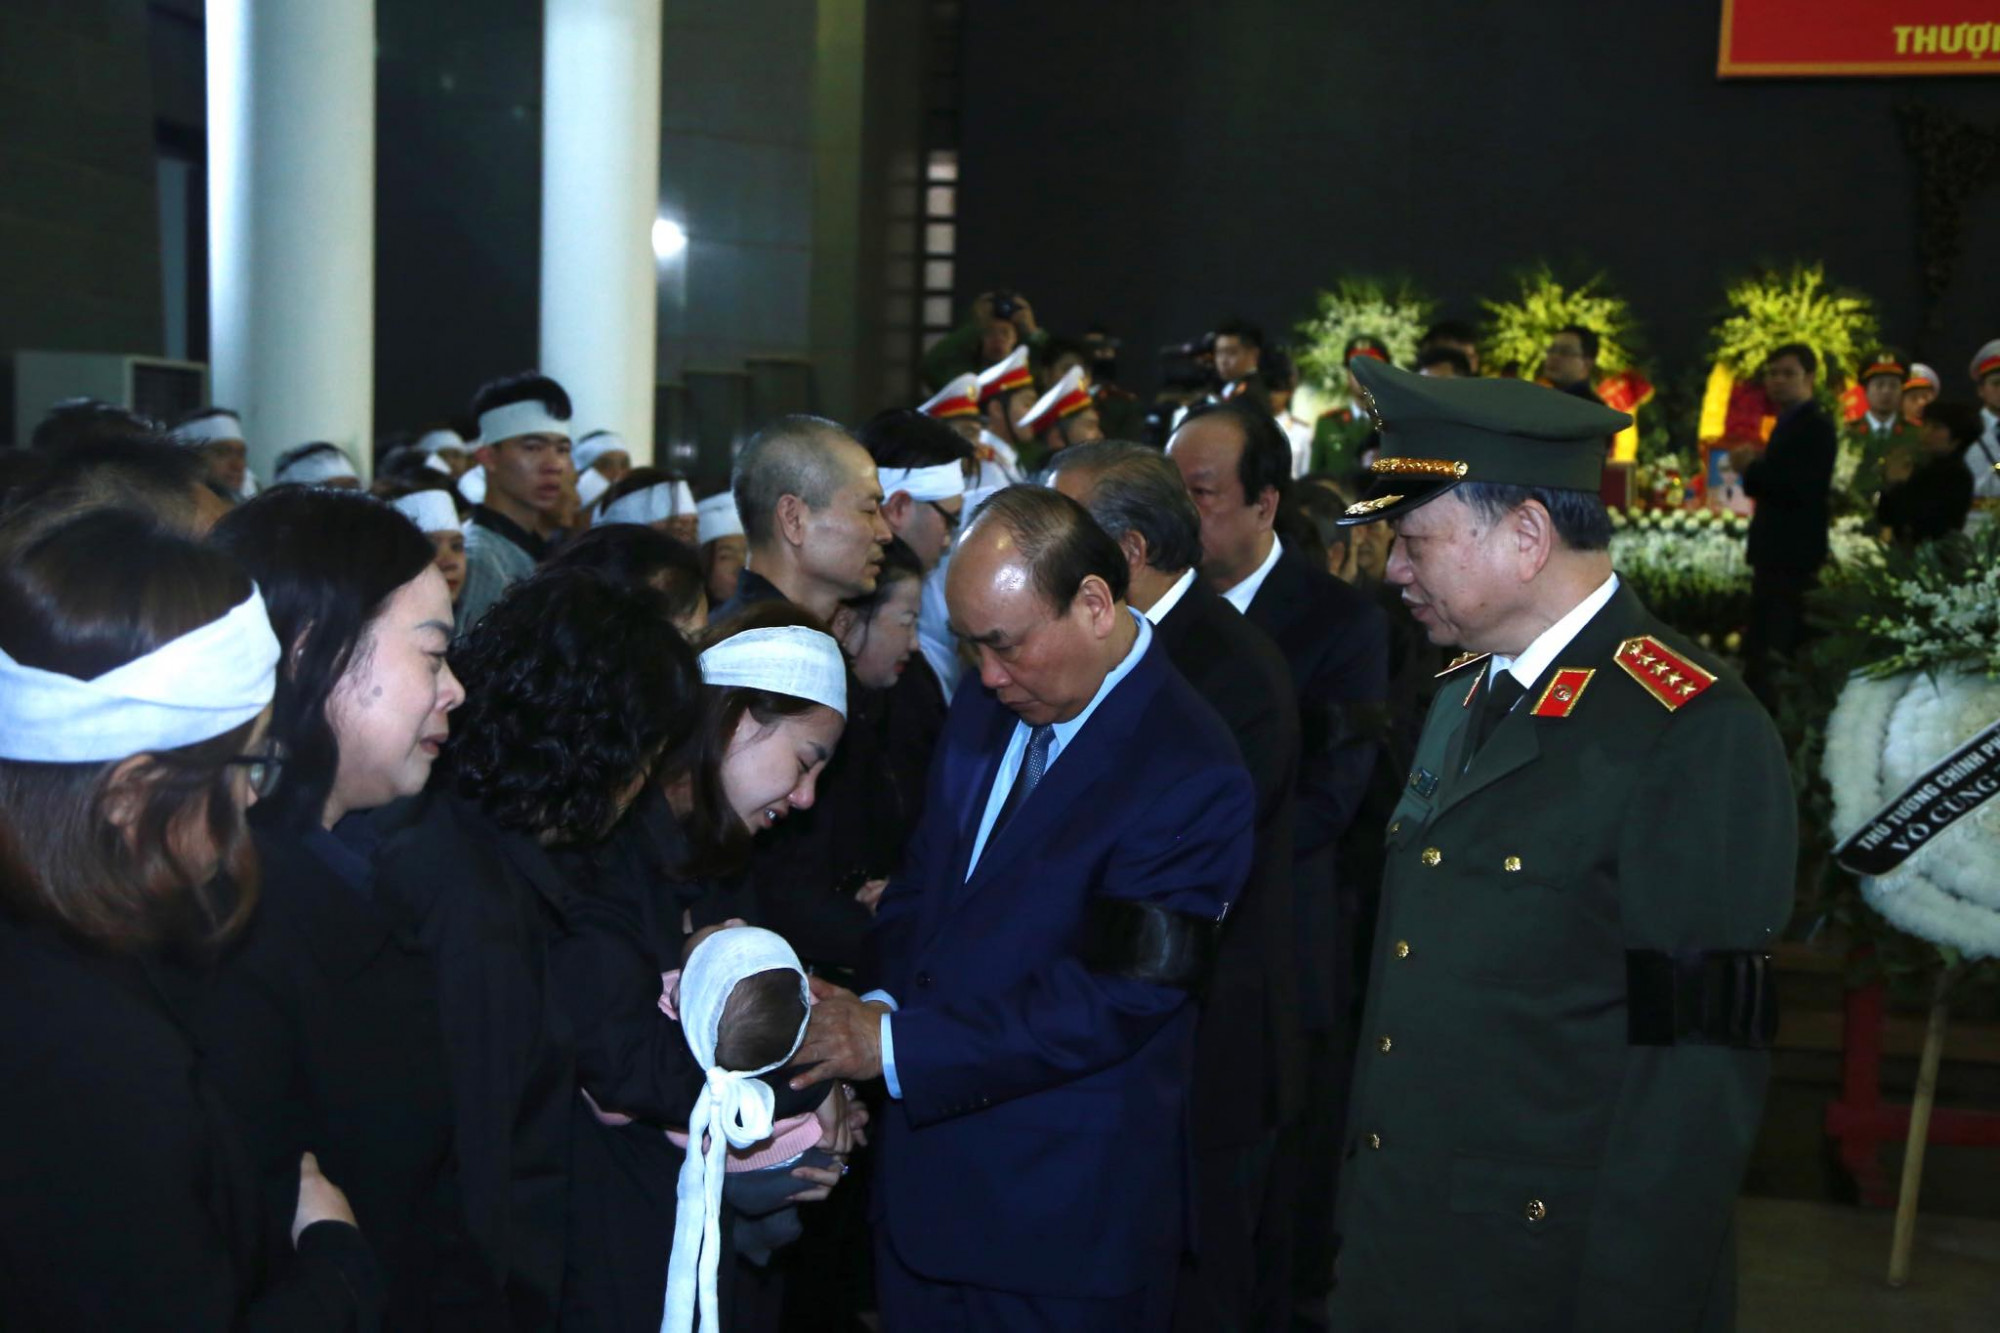 Đoàn Chính phủ do Thủ tướng Nguyễn Xuân Phúc hỏi thăm thân nhân các liệt sĩ